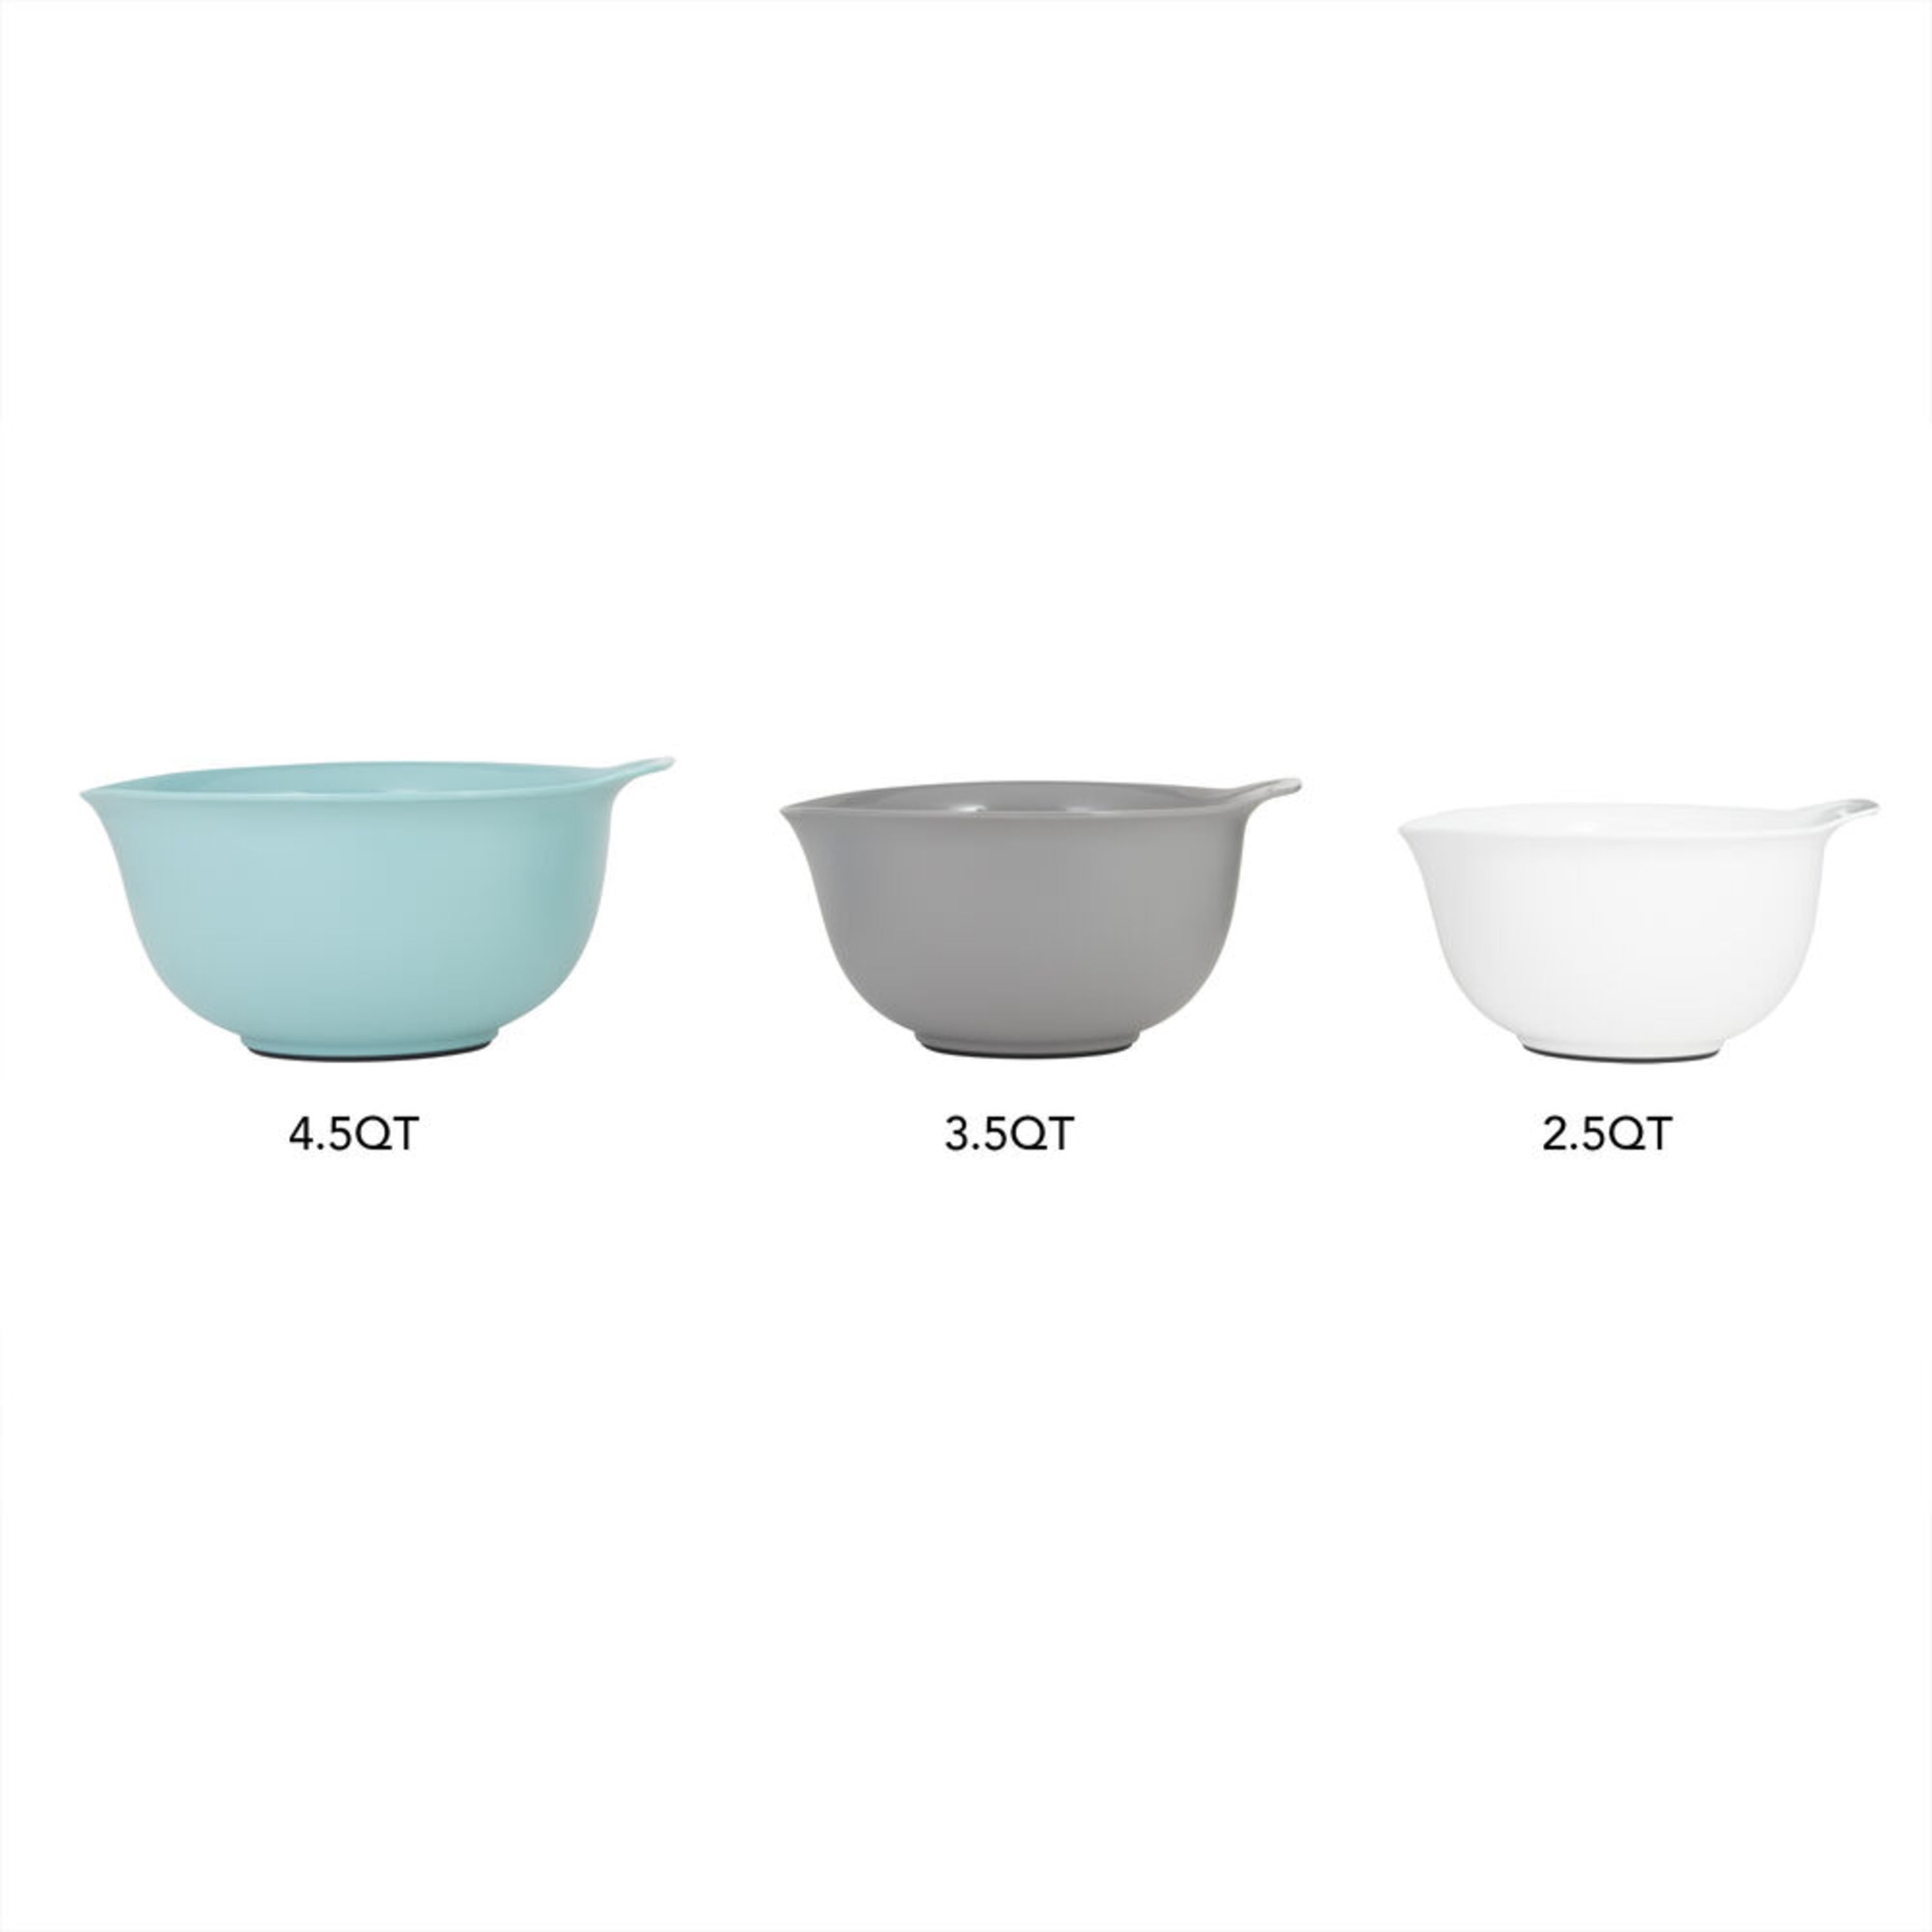  KitchenAid Classic Mixing Bowls, Set of 5, Aqua Sky 2